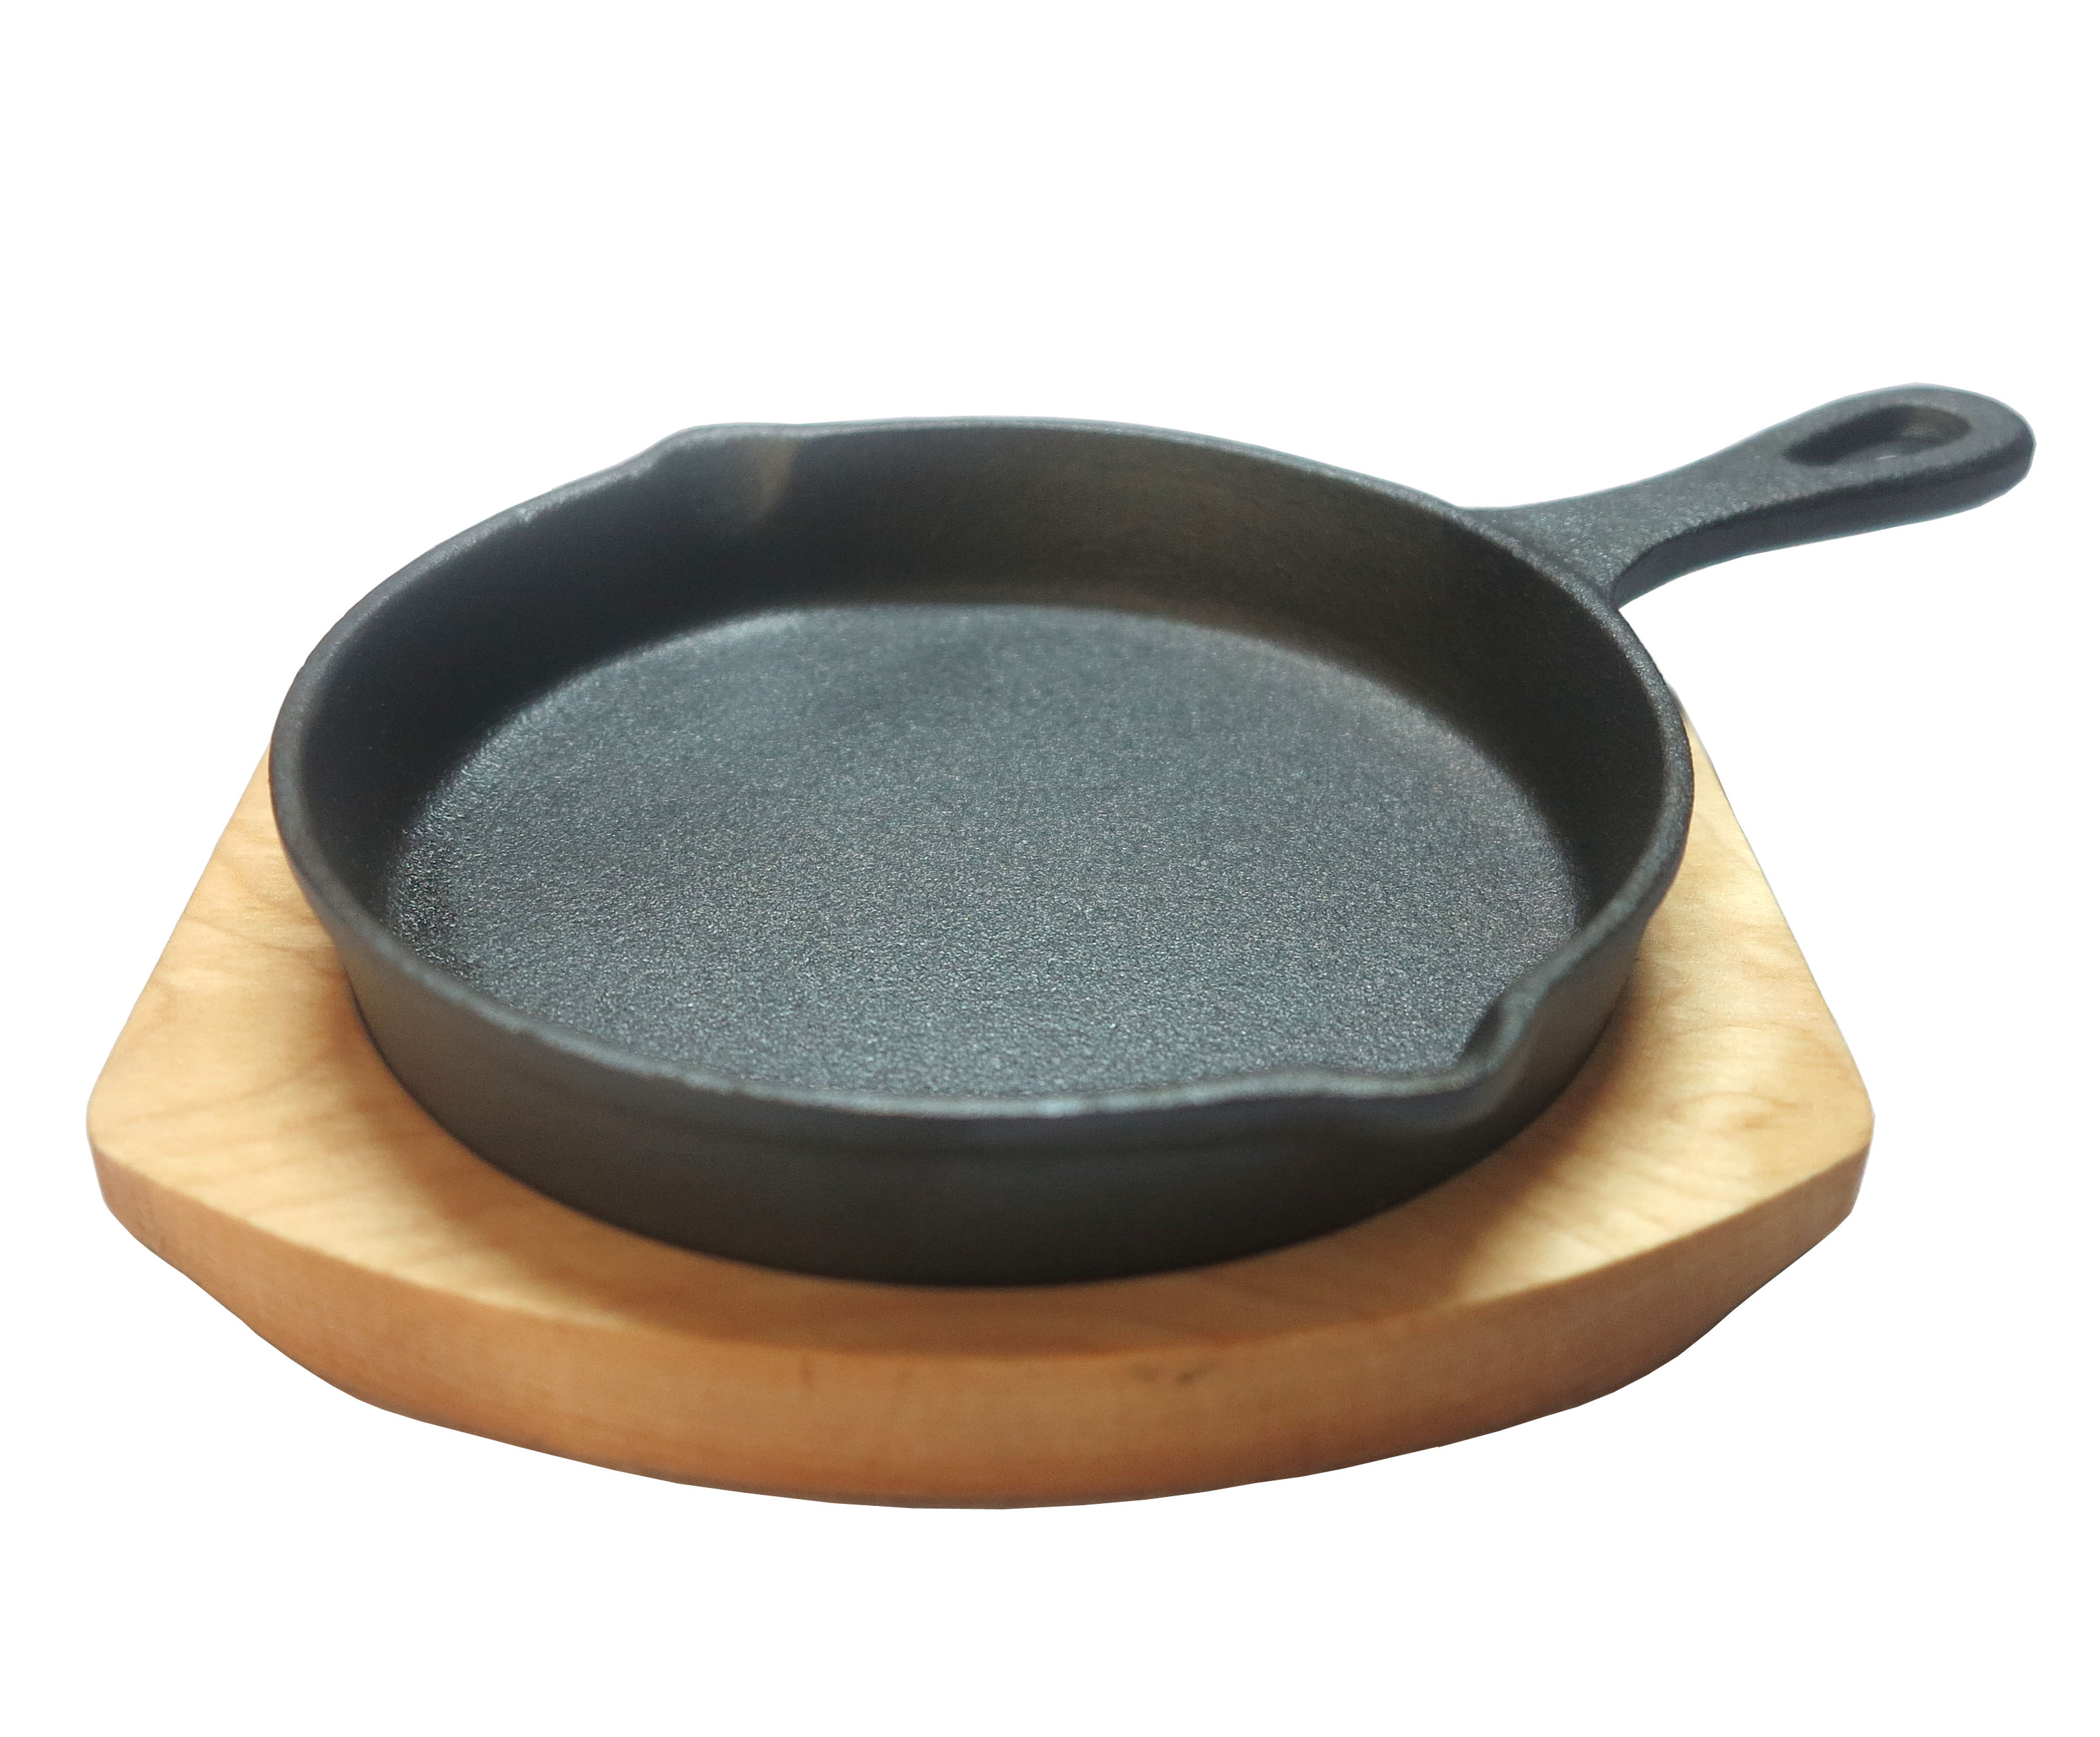 Vegetable oil frying pan manufacturer cast iron skillet